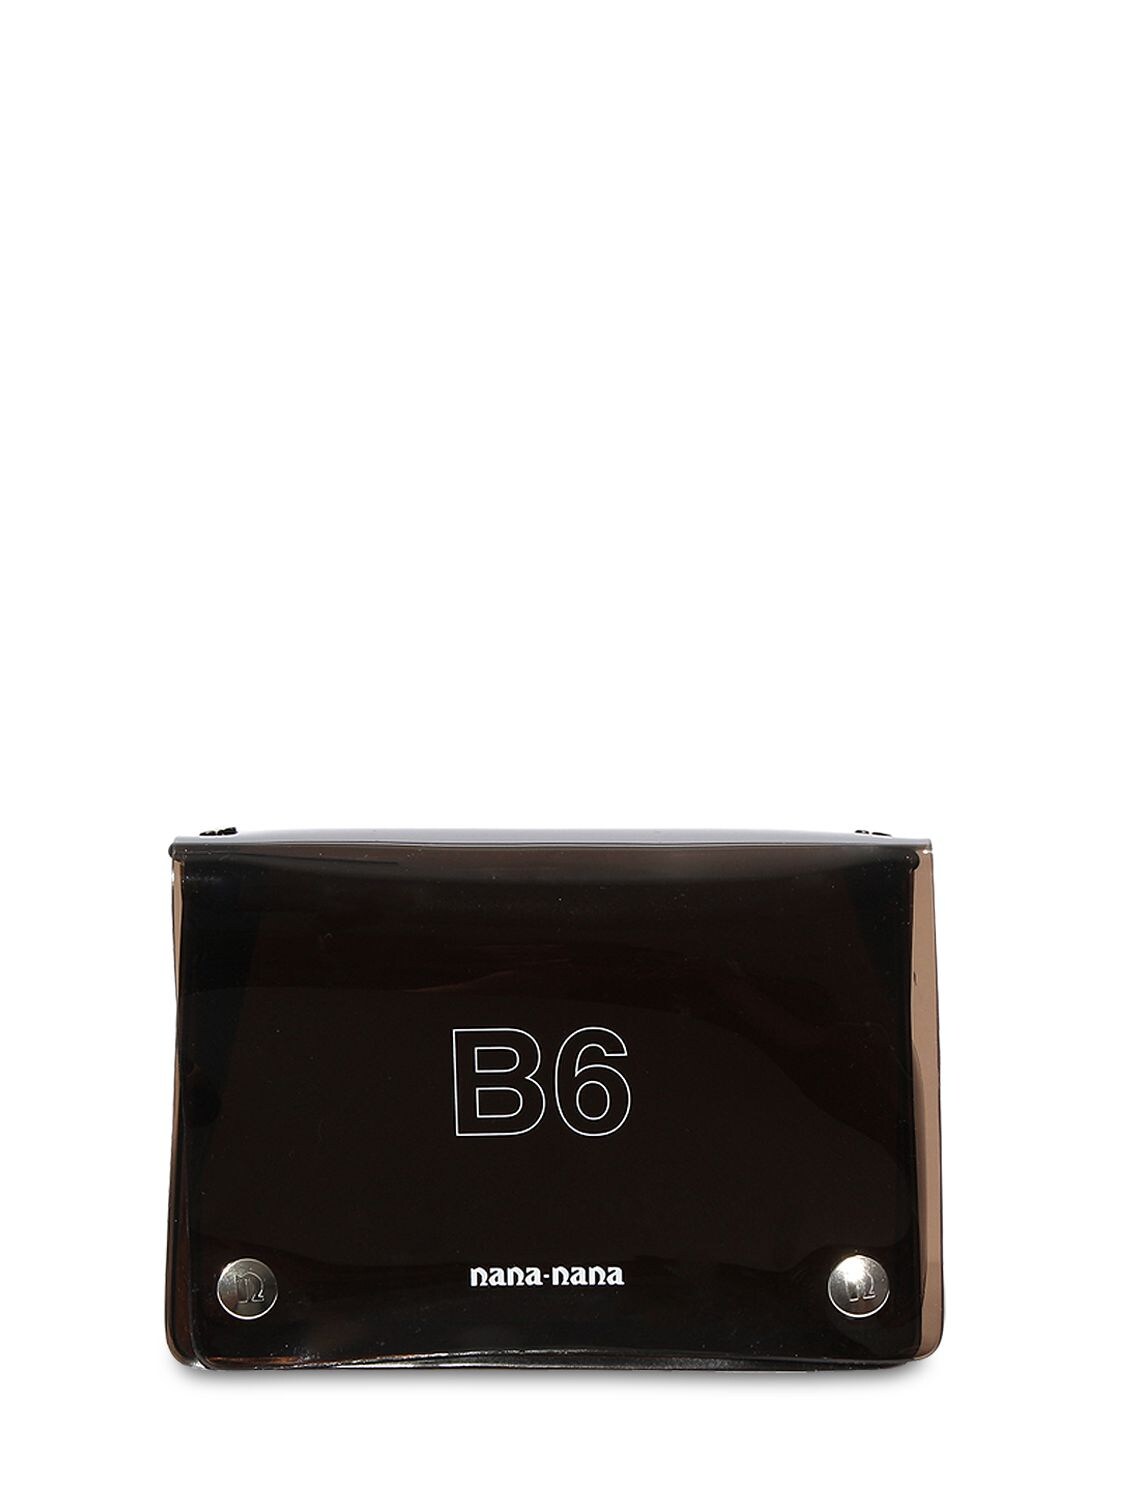 Nana-nana B6 Pvc Crossbody Bag In Black